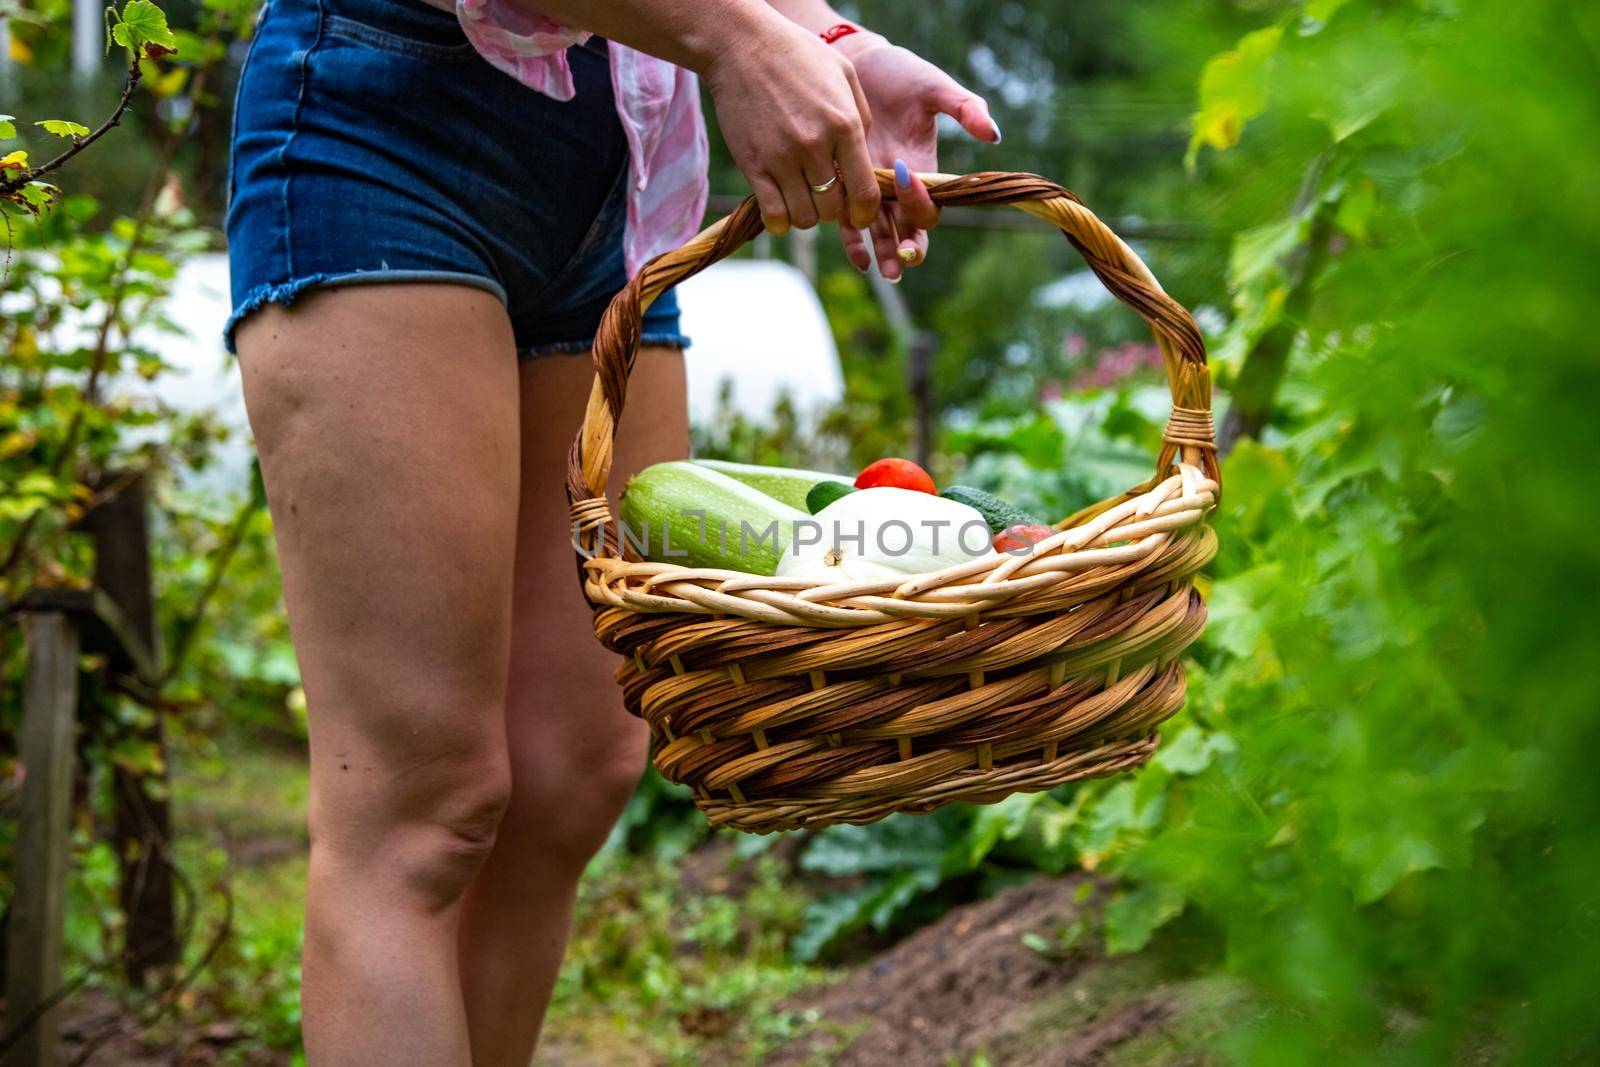 Harvesting vegetables in vegetable garden. woman holds basket with harvest